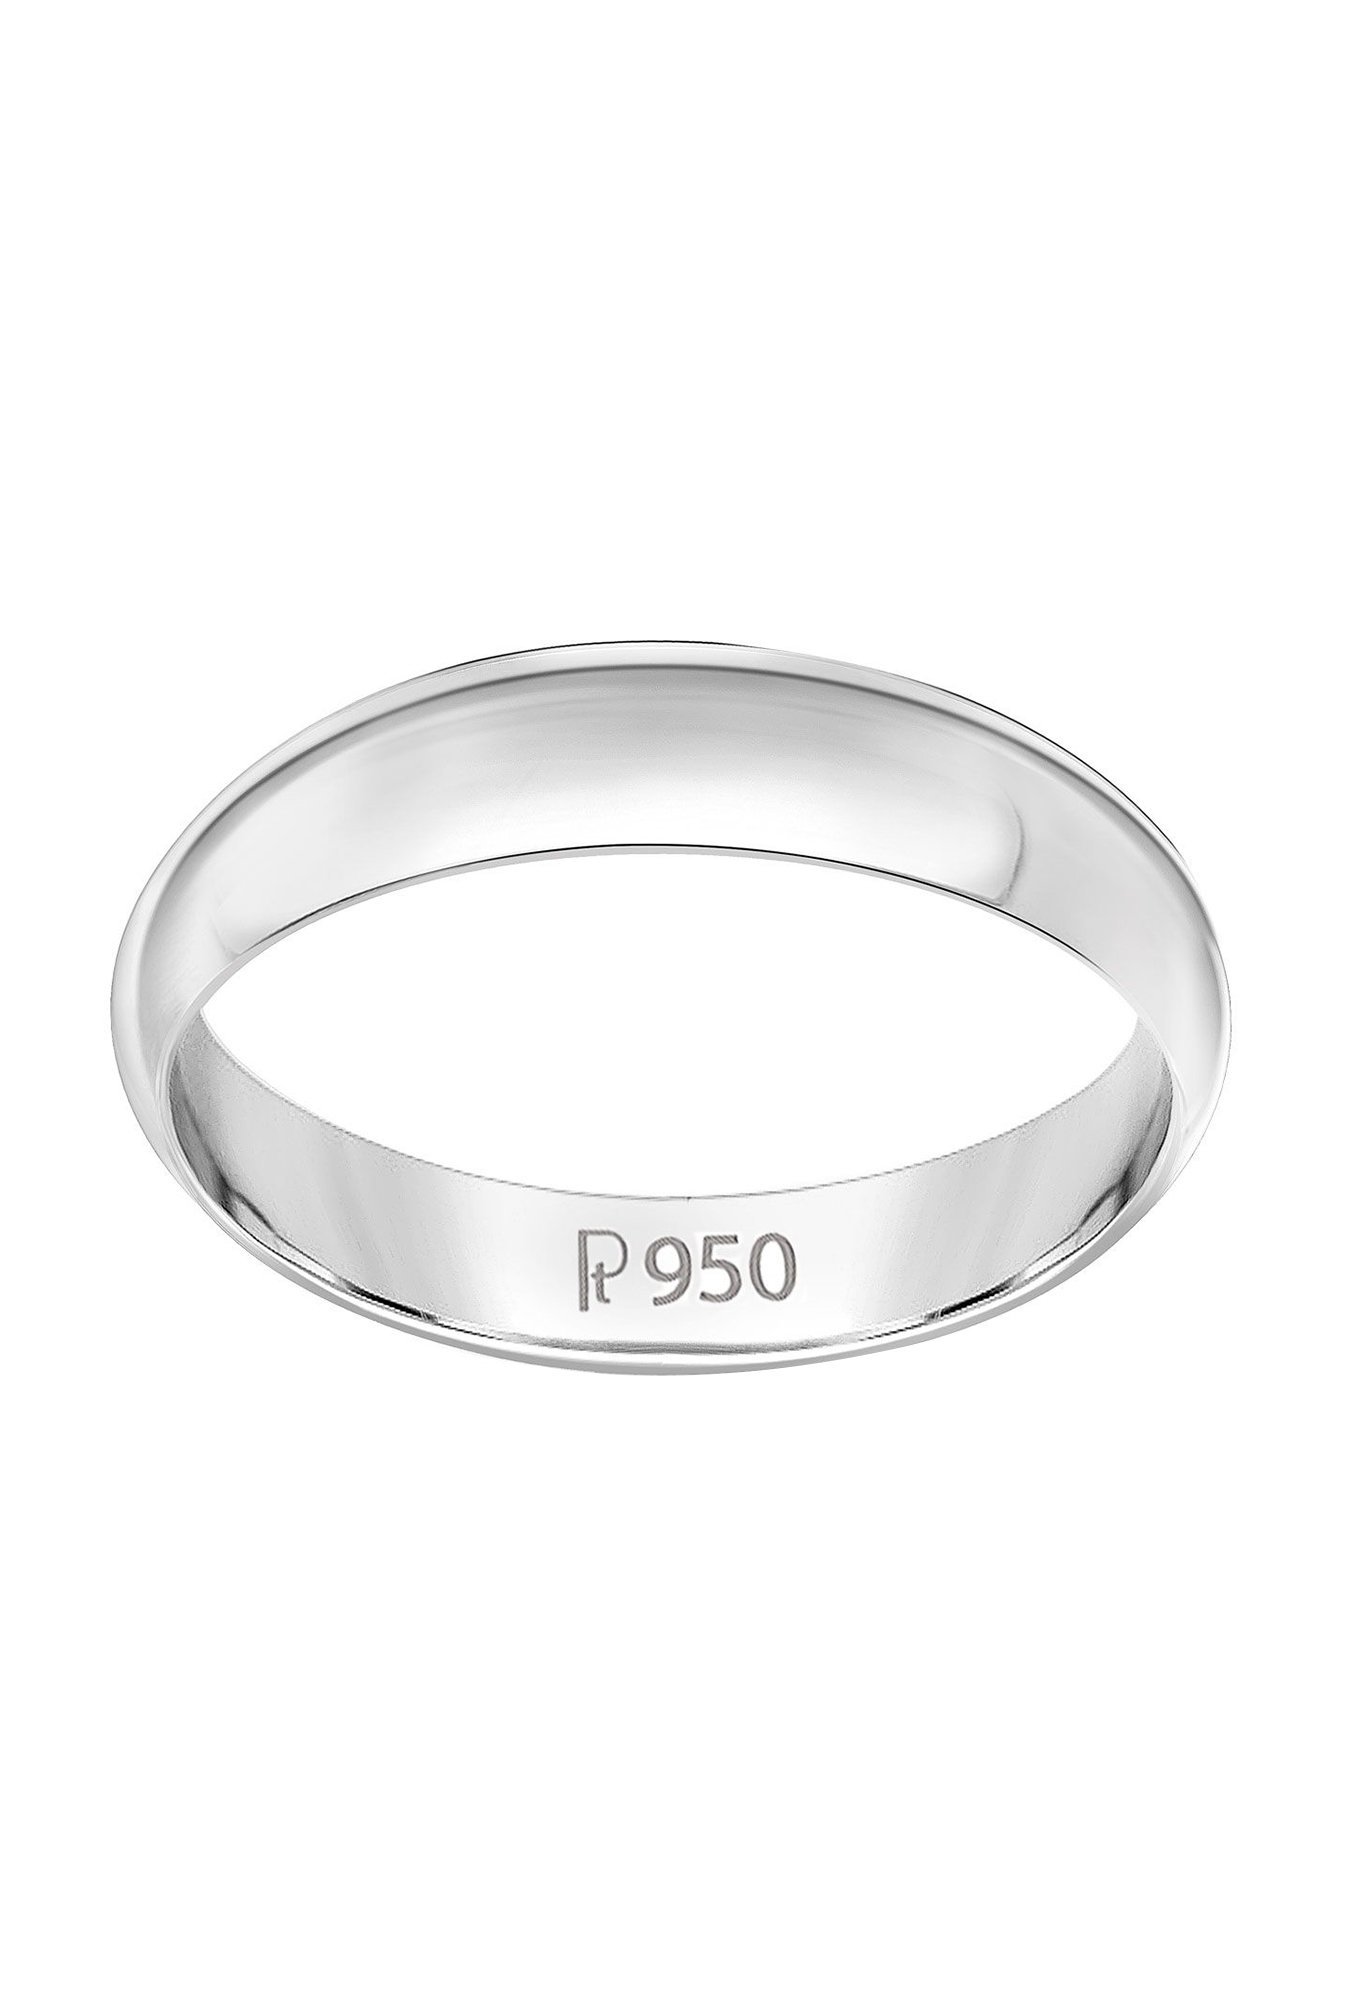 7mm Beveled Edges Plain Platinum Ring for Men JL PT 616 - Solid